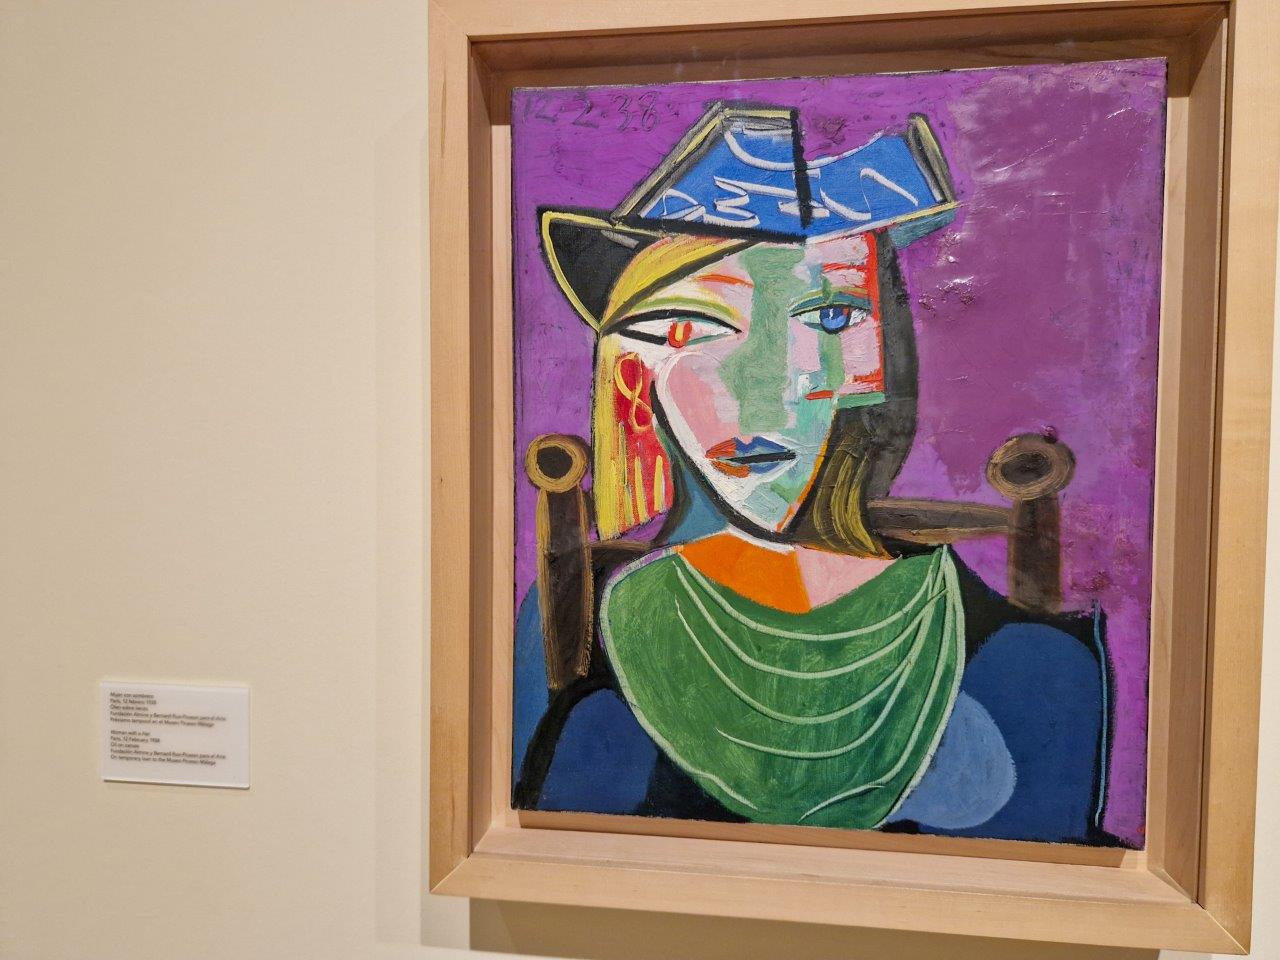 Schilderij van Picasso in Malaga